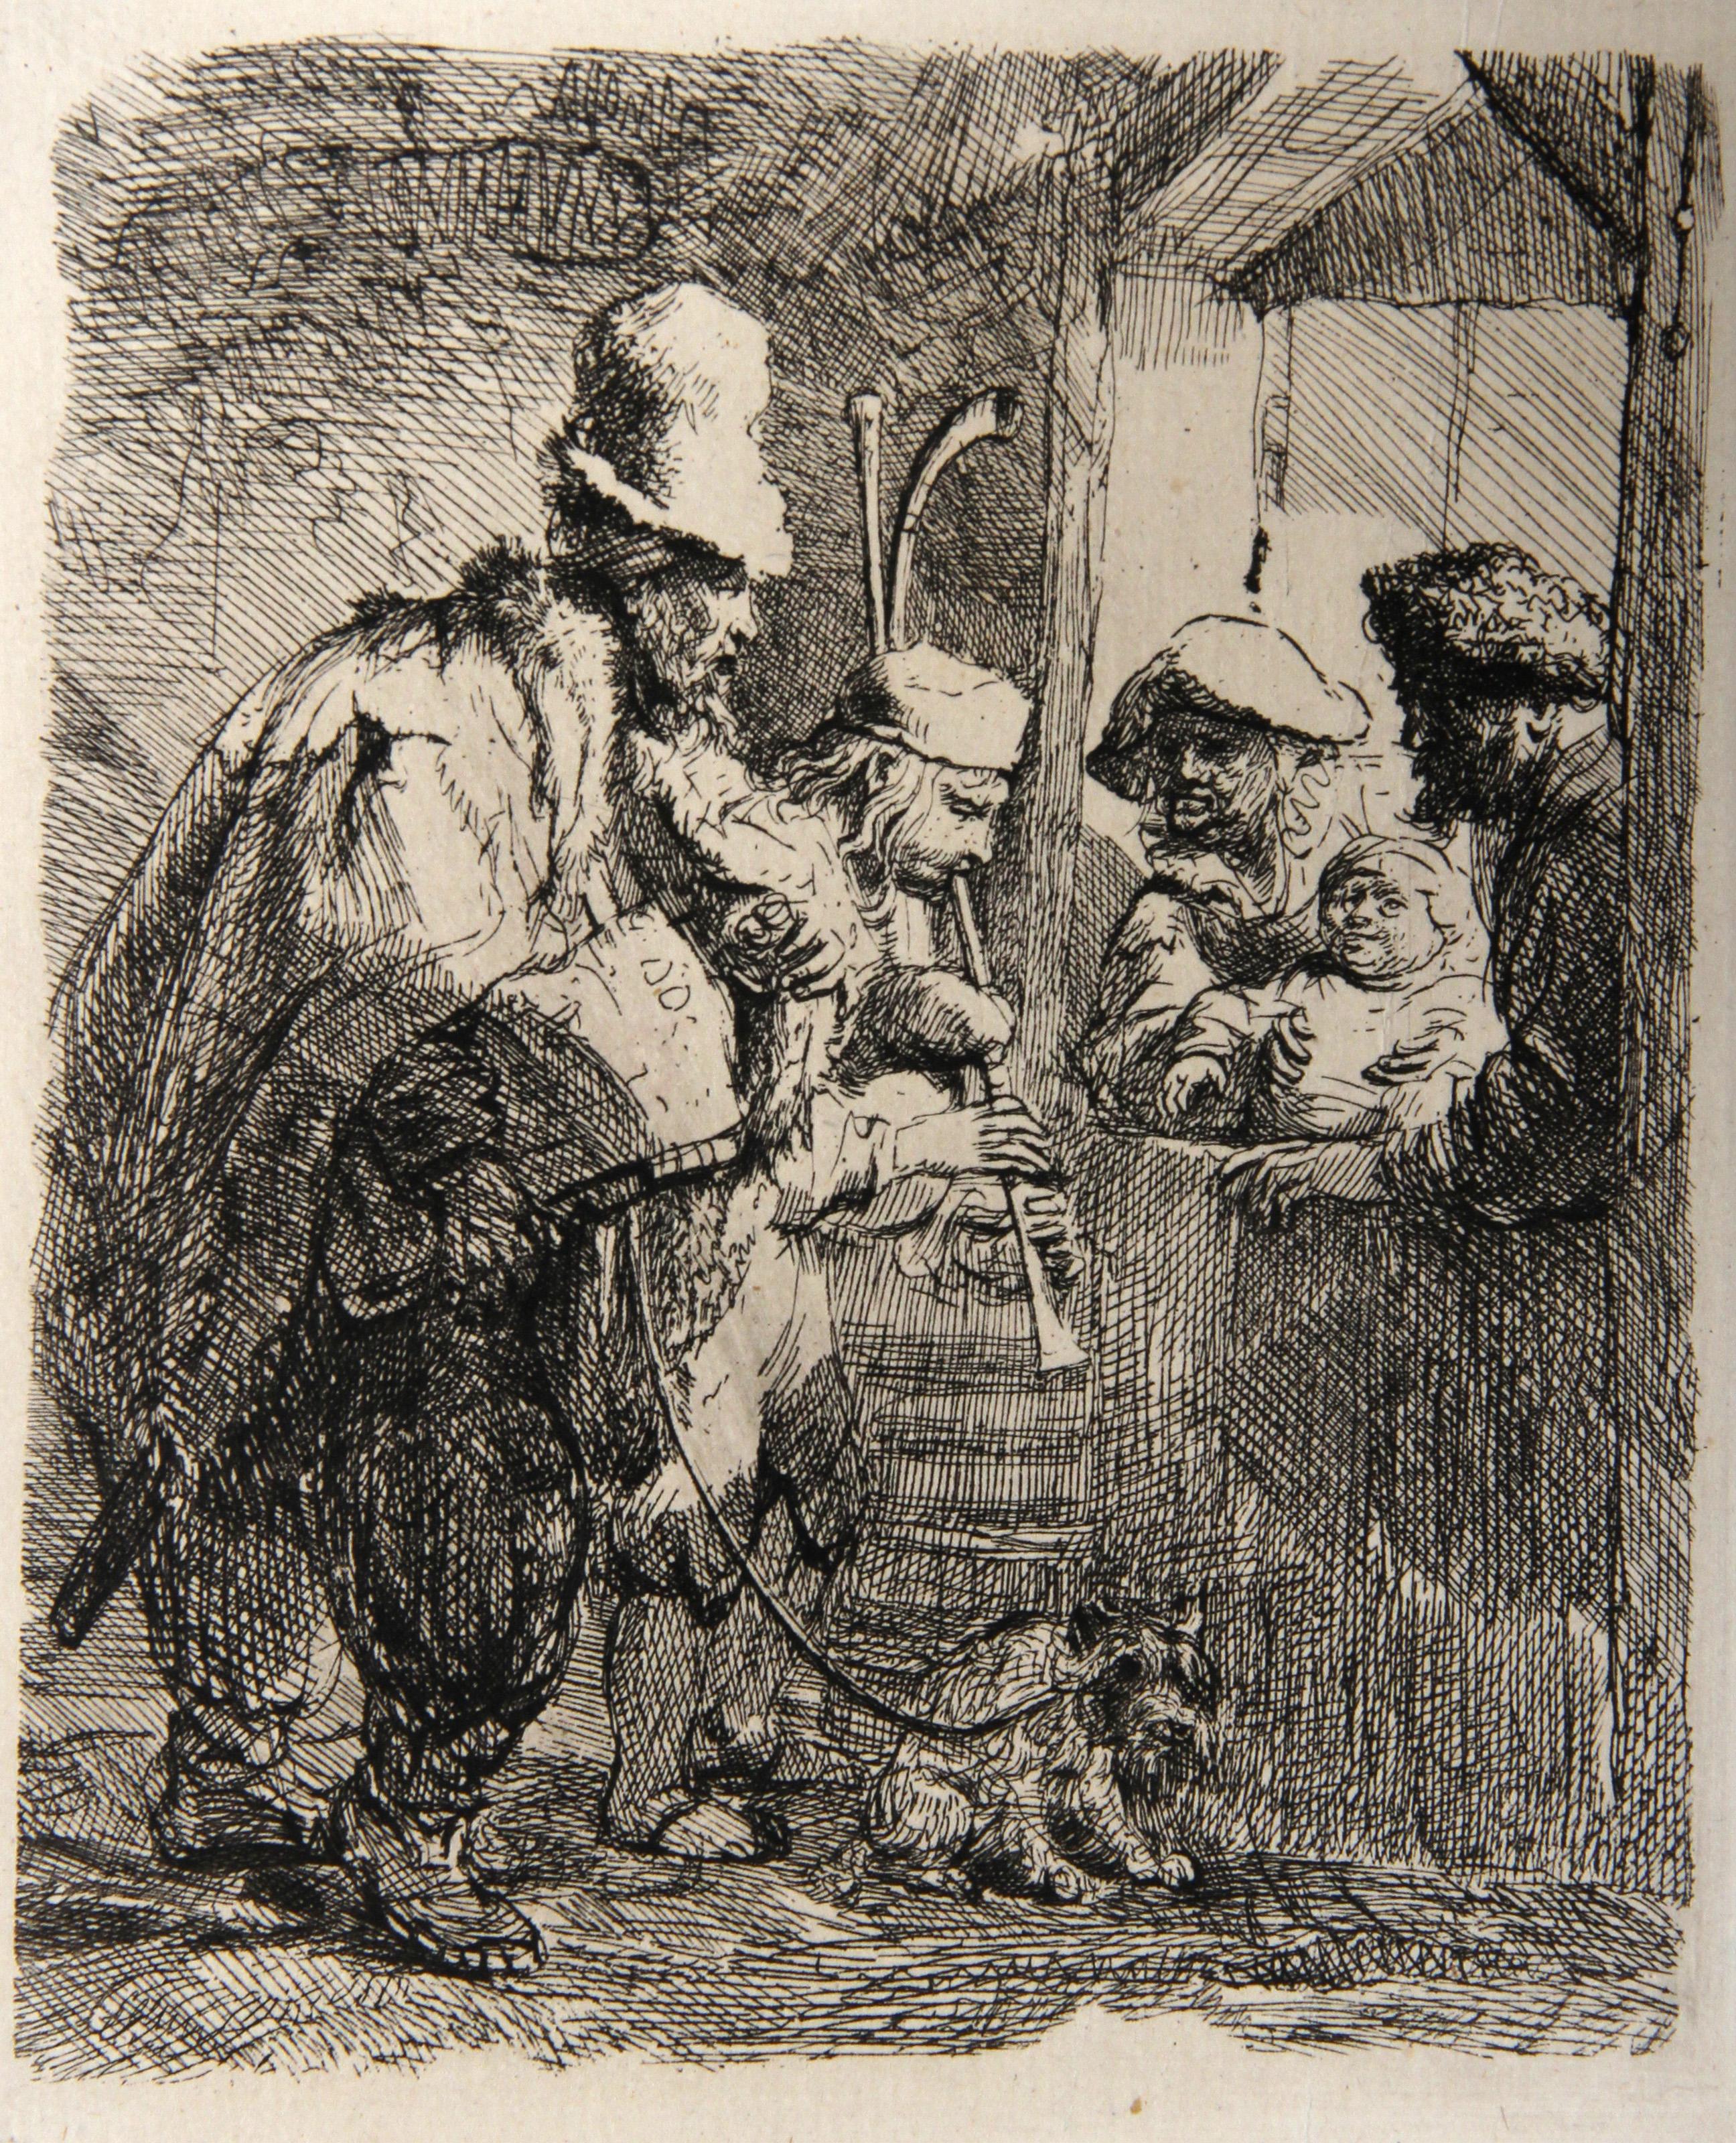  Rembrandt van Rijn, Nach Amand Durand, Niederländer (1606 - 1669) - Les Musiciens Ambulants (B119), Jahr: 1878 (von Original 1635), Medium: Heliogravüre, Größe: 5.5  x 4.75 in. (13.97  x 12,07 cm), Drucker: Amand Durand, Beschreibung: Der